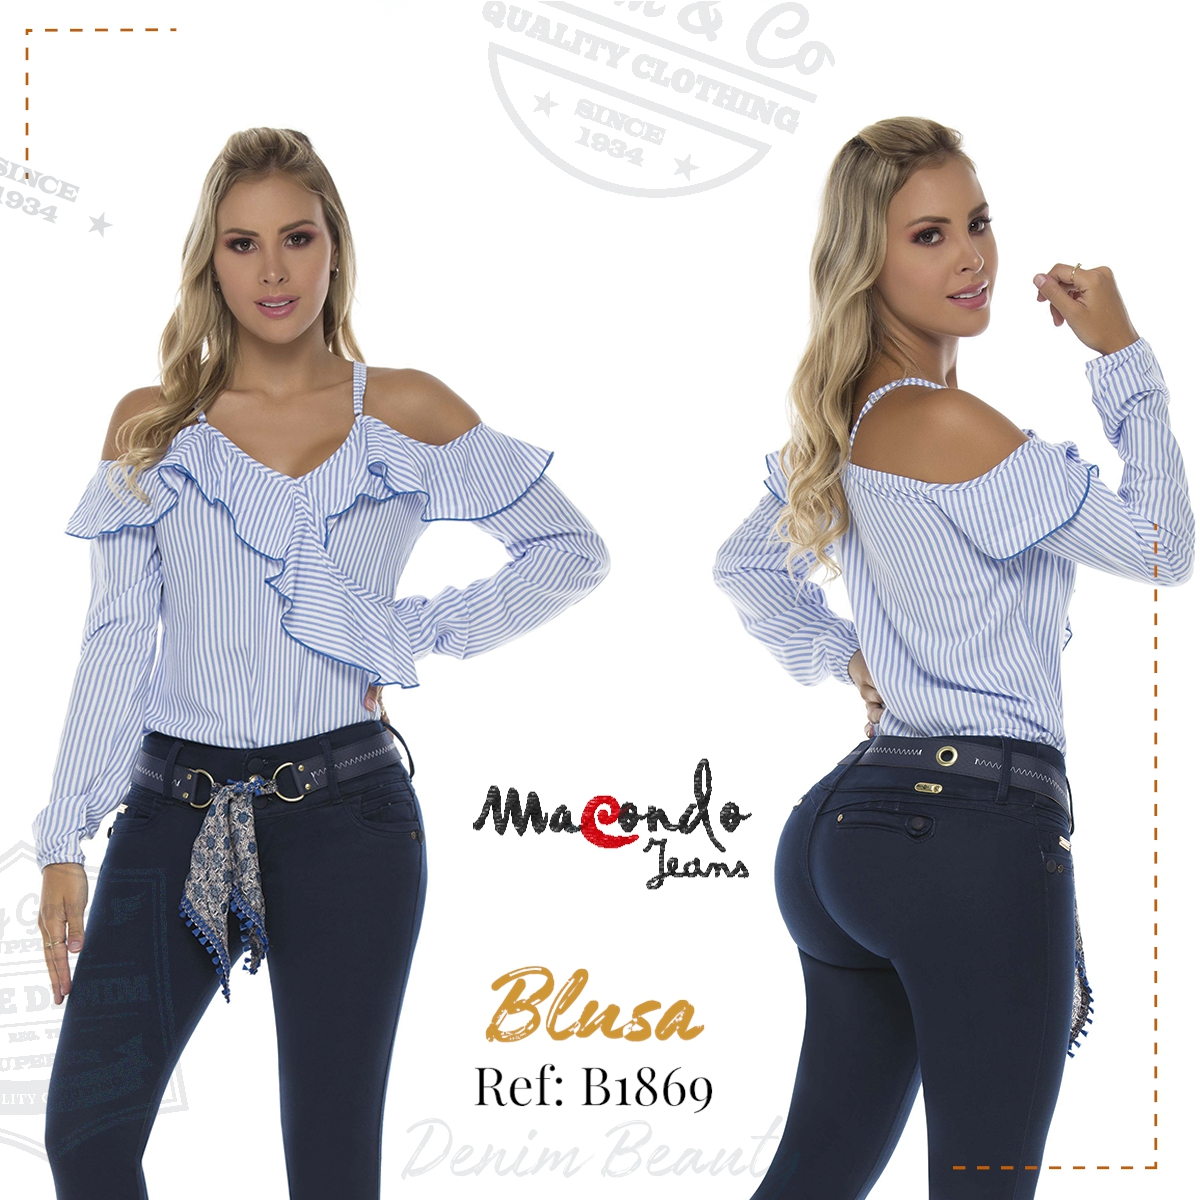 Vestidos y Blusas - Denim Beauty - Macondo Jeans Colombianos